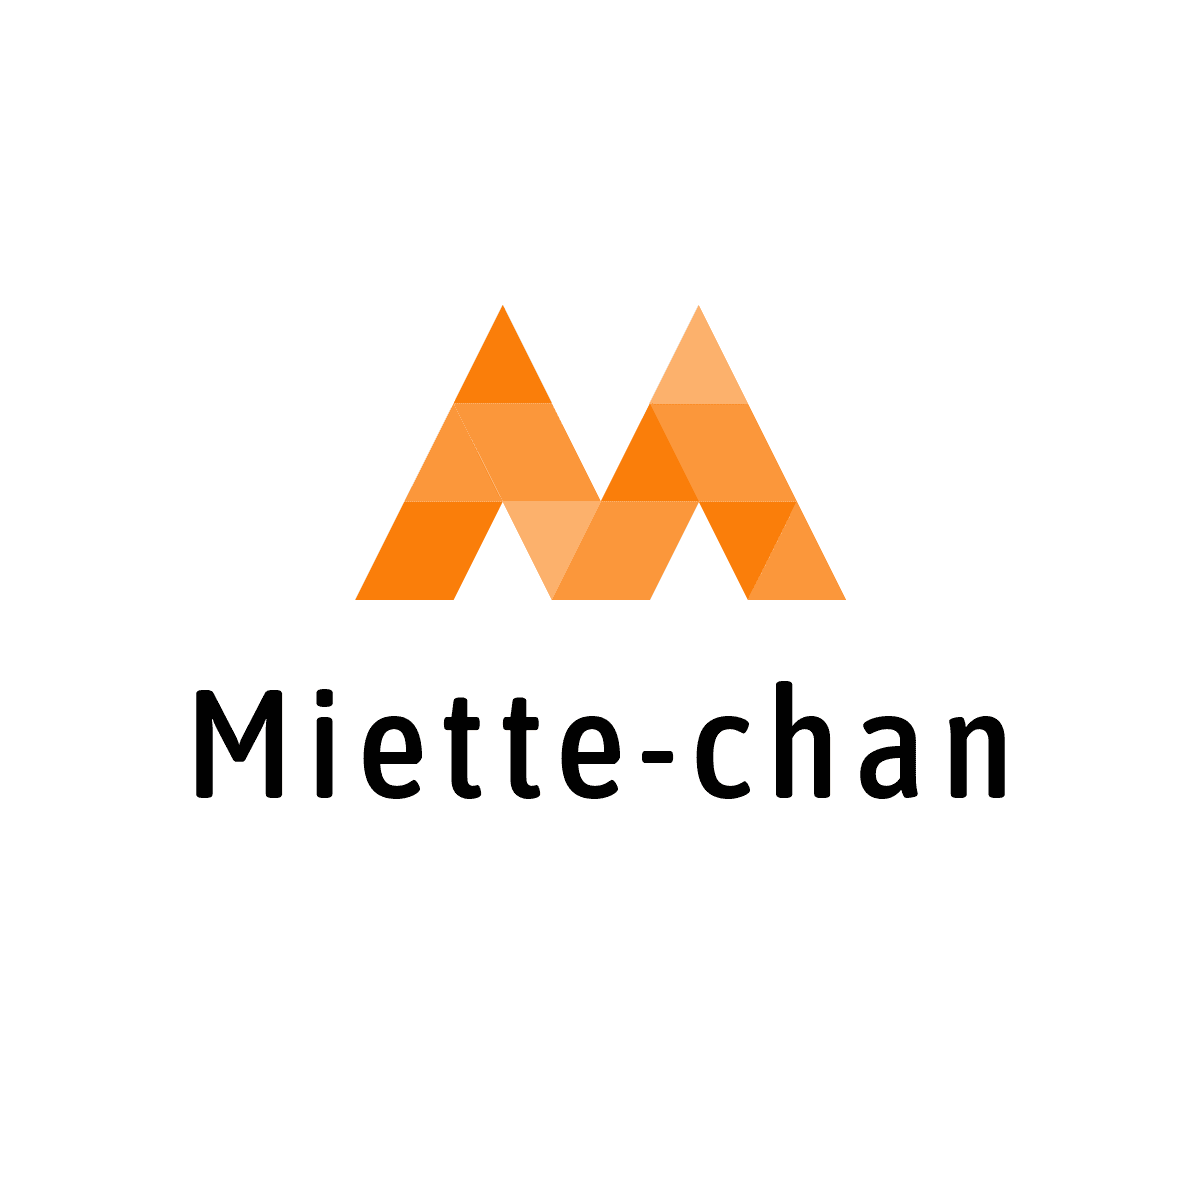 Miette-chan